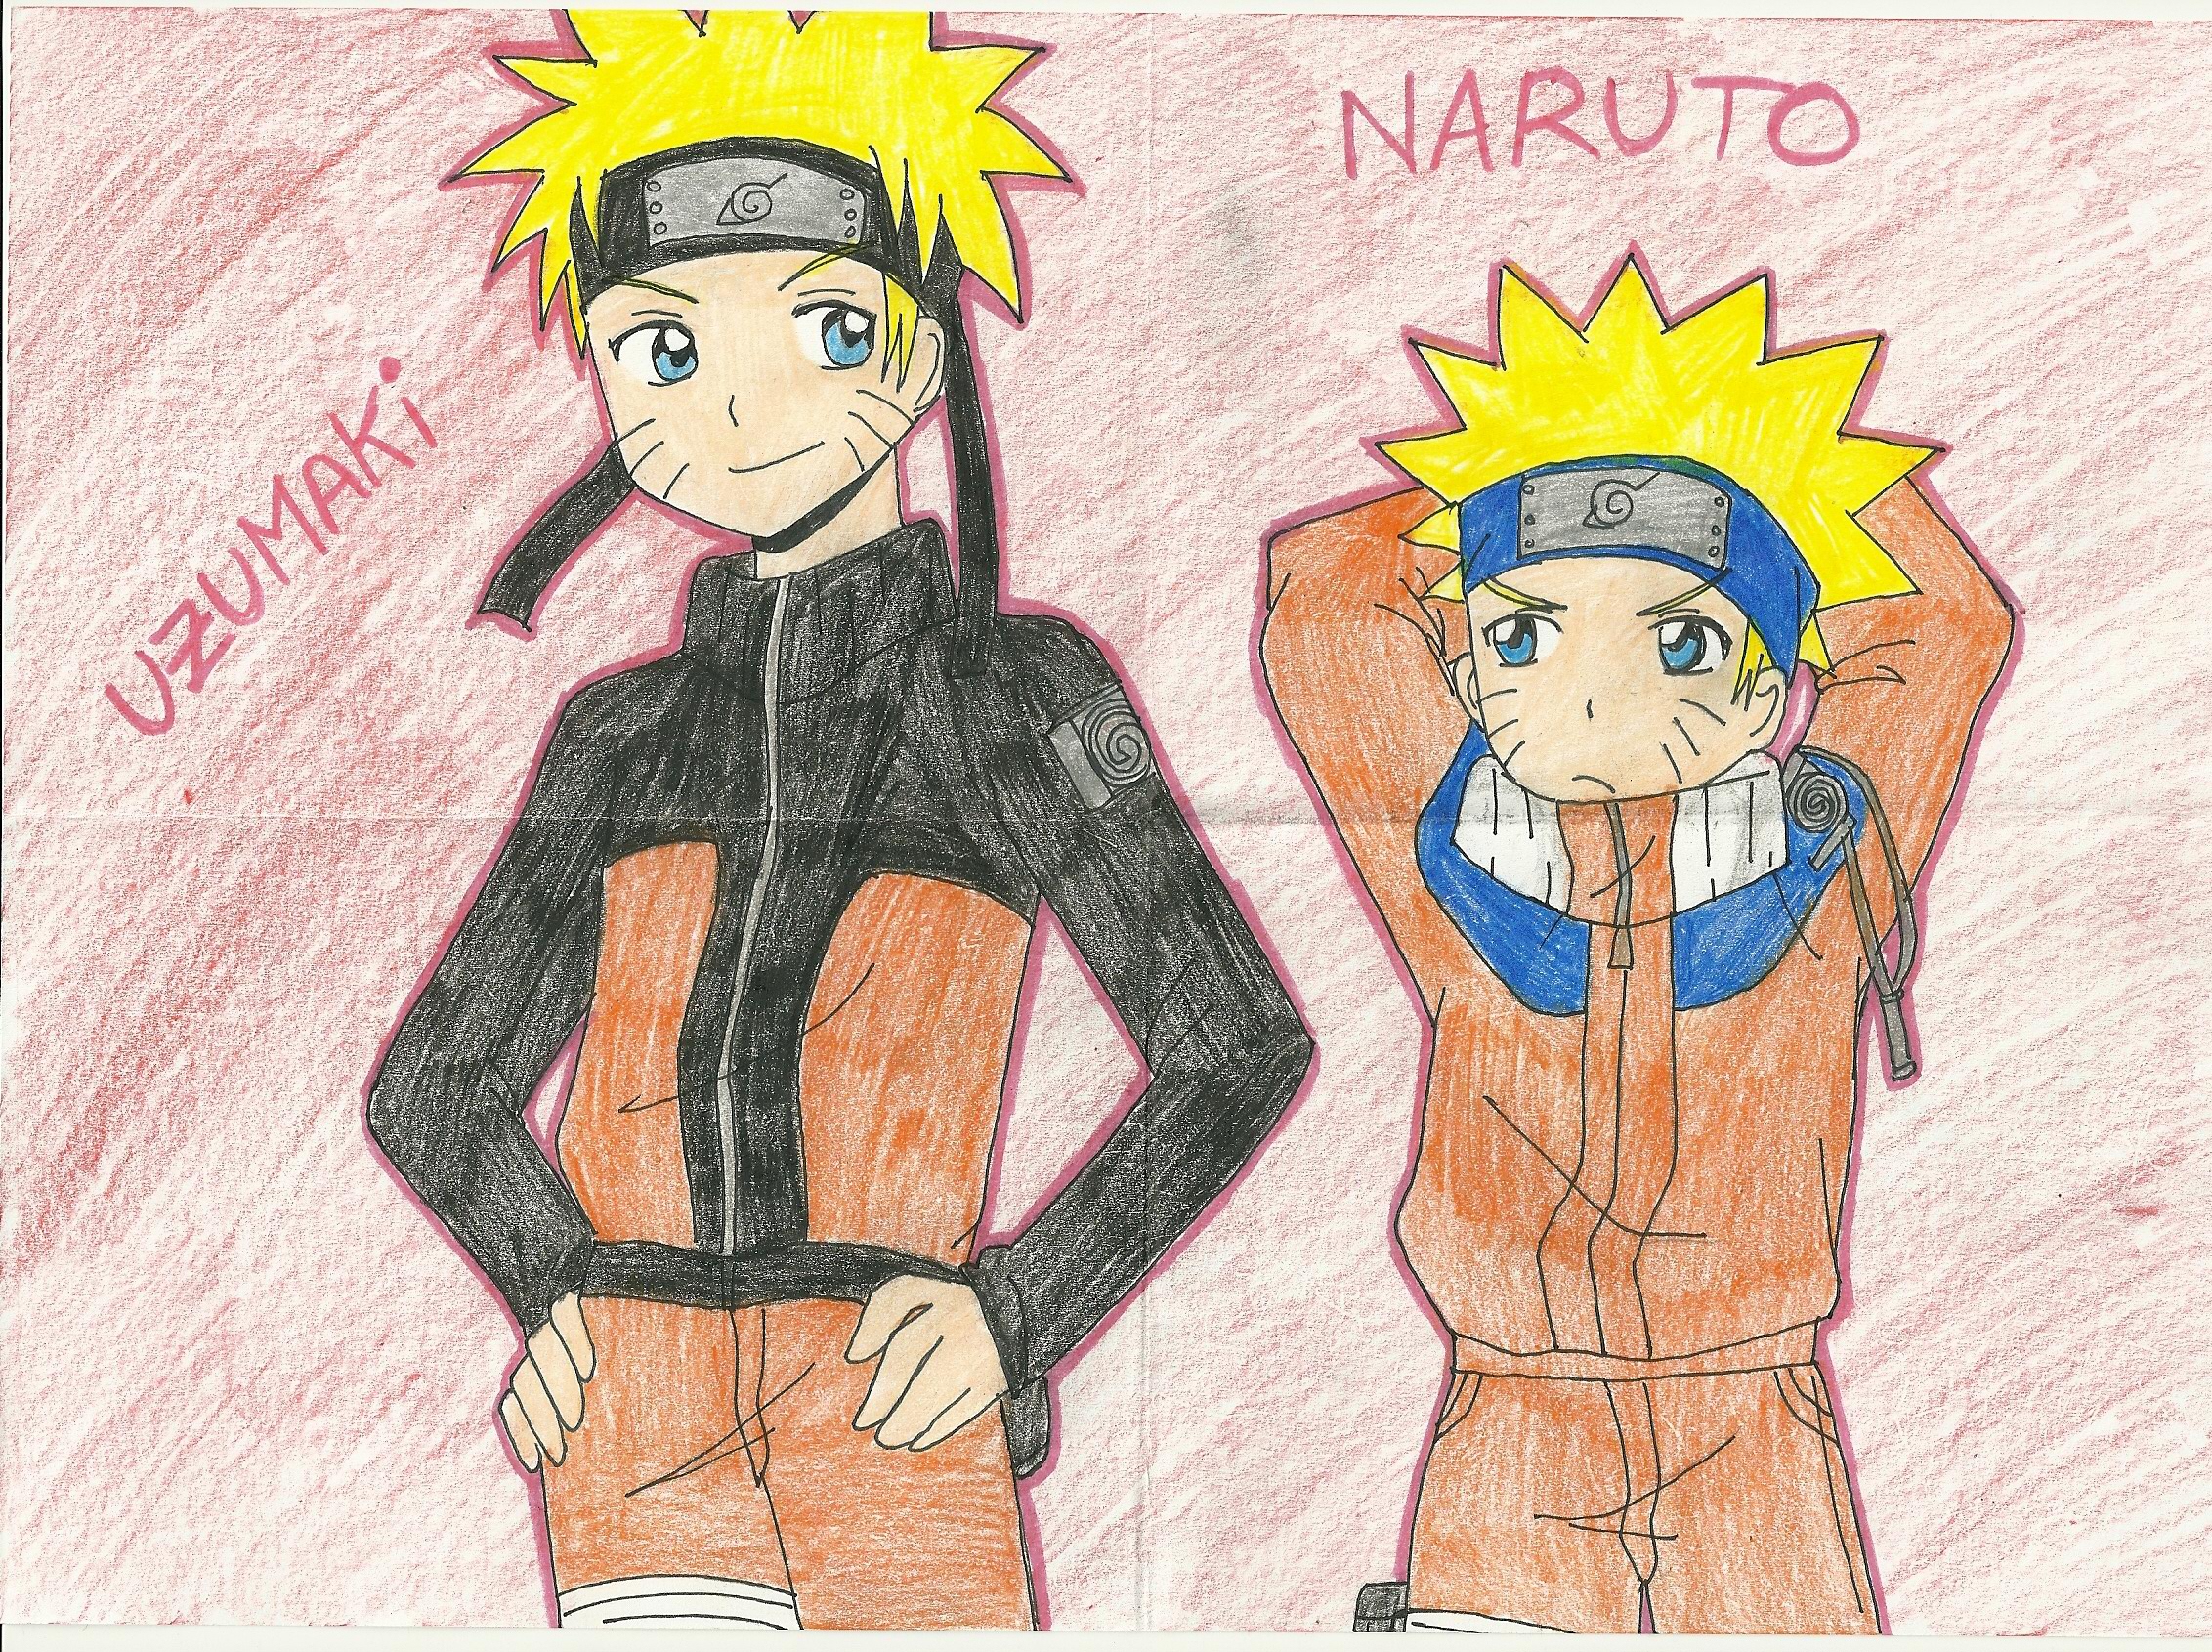 [Naruto and Naruto Shippuden] Naruto Uzumaki